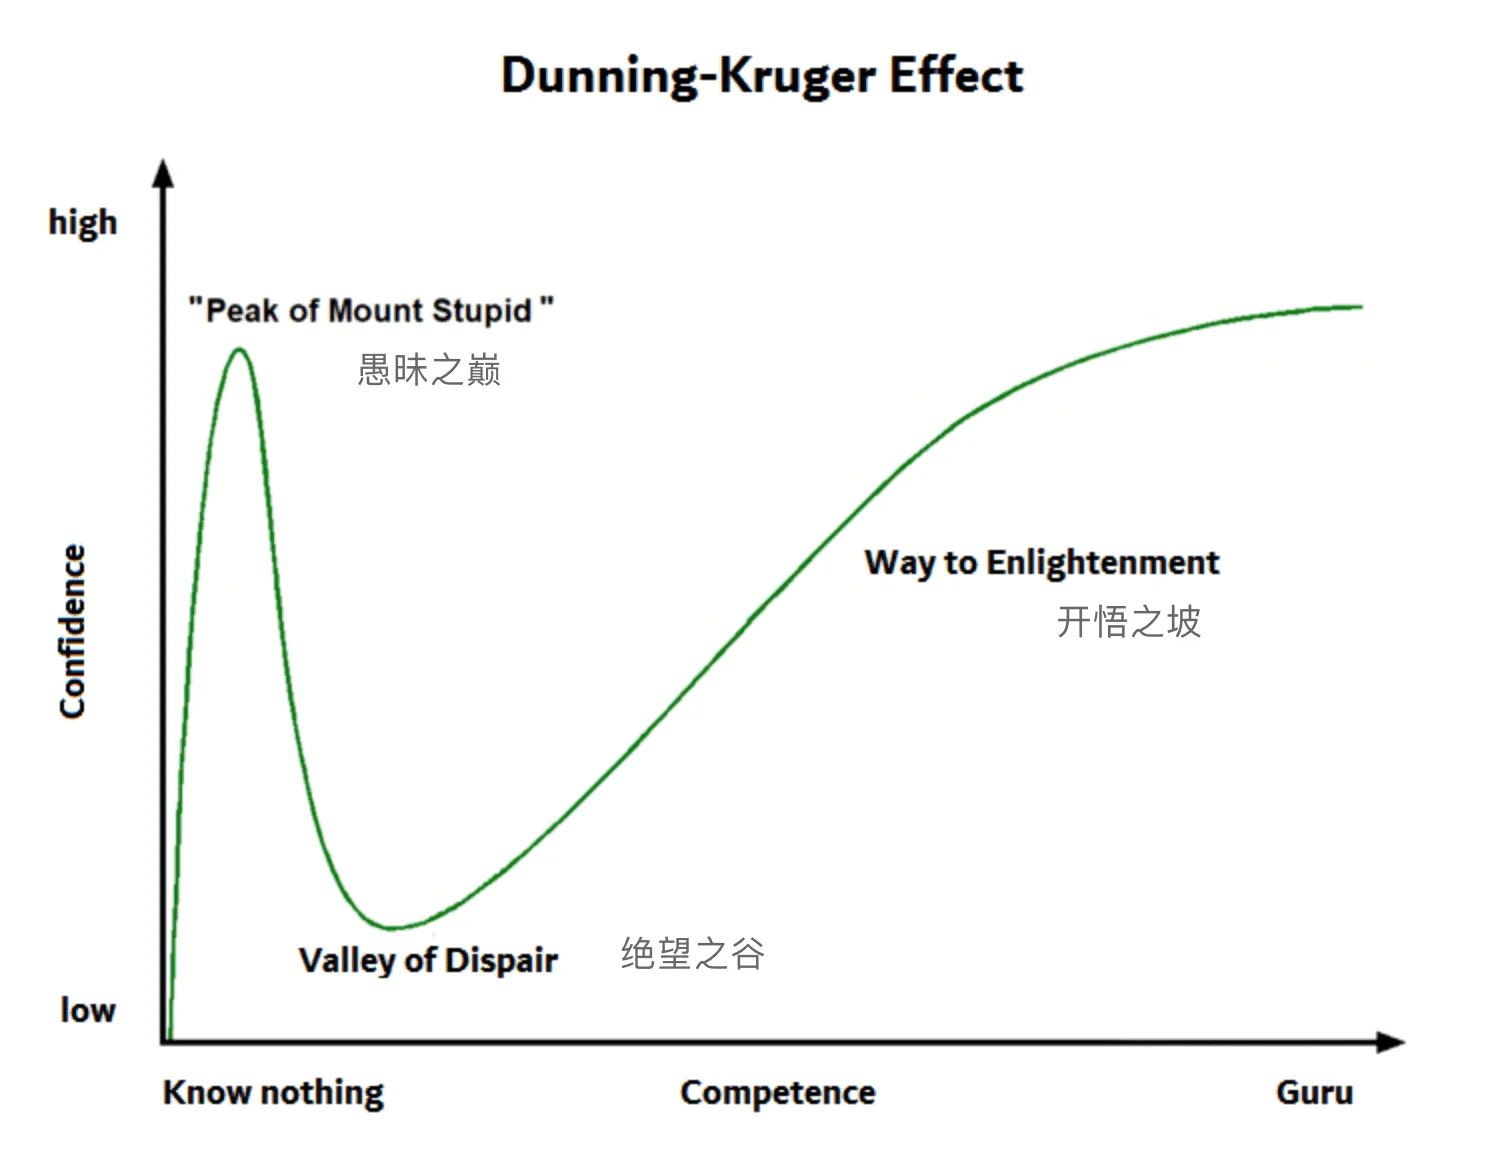 https://zh.wikipedia.org/wiki/File:Dunning-Kruger-Effect-en.png!webp